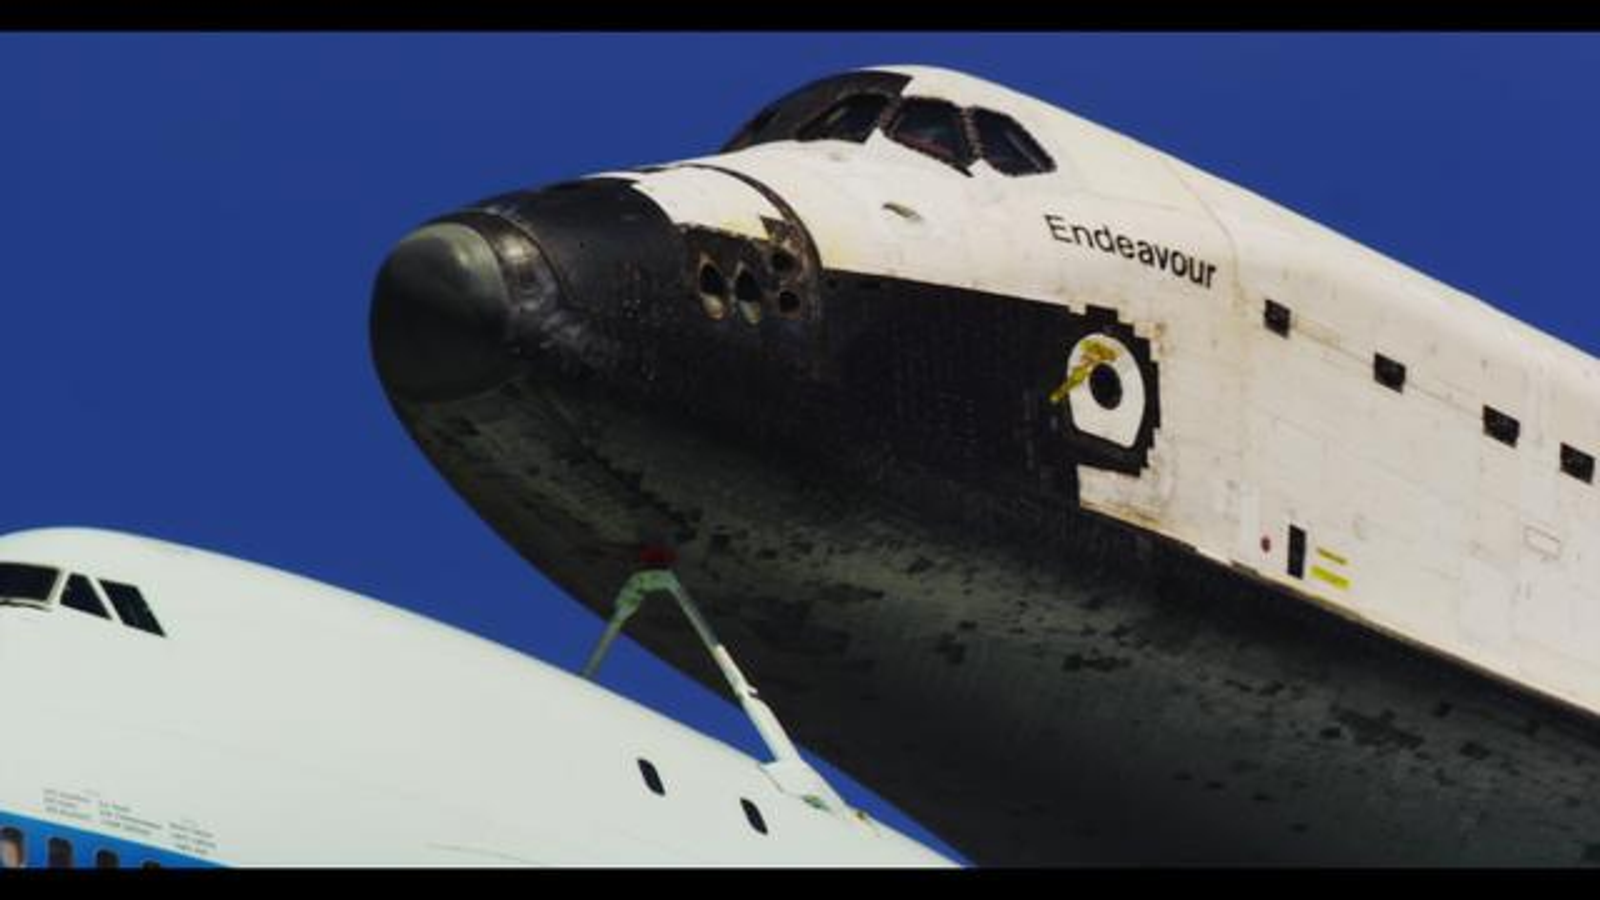 space shuttle endeavour final flight